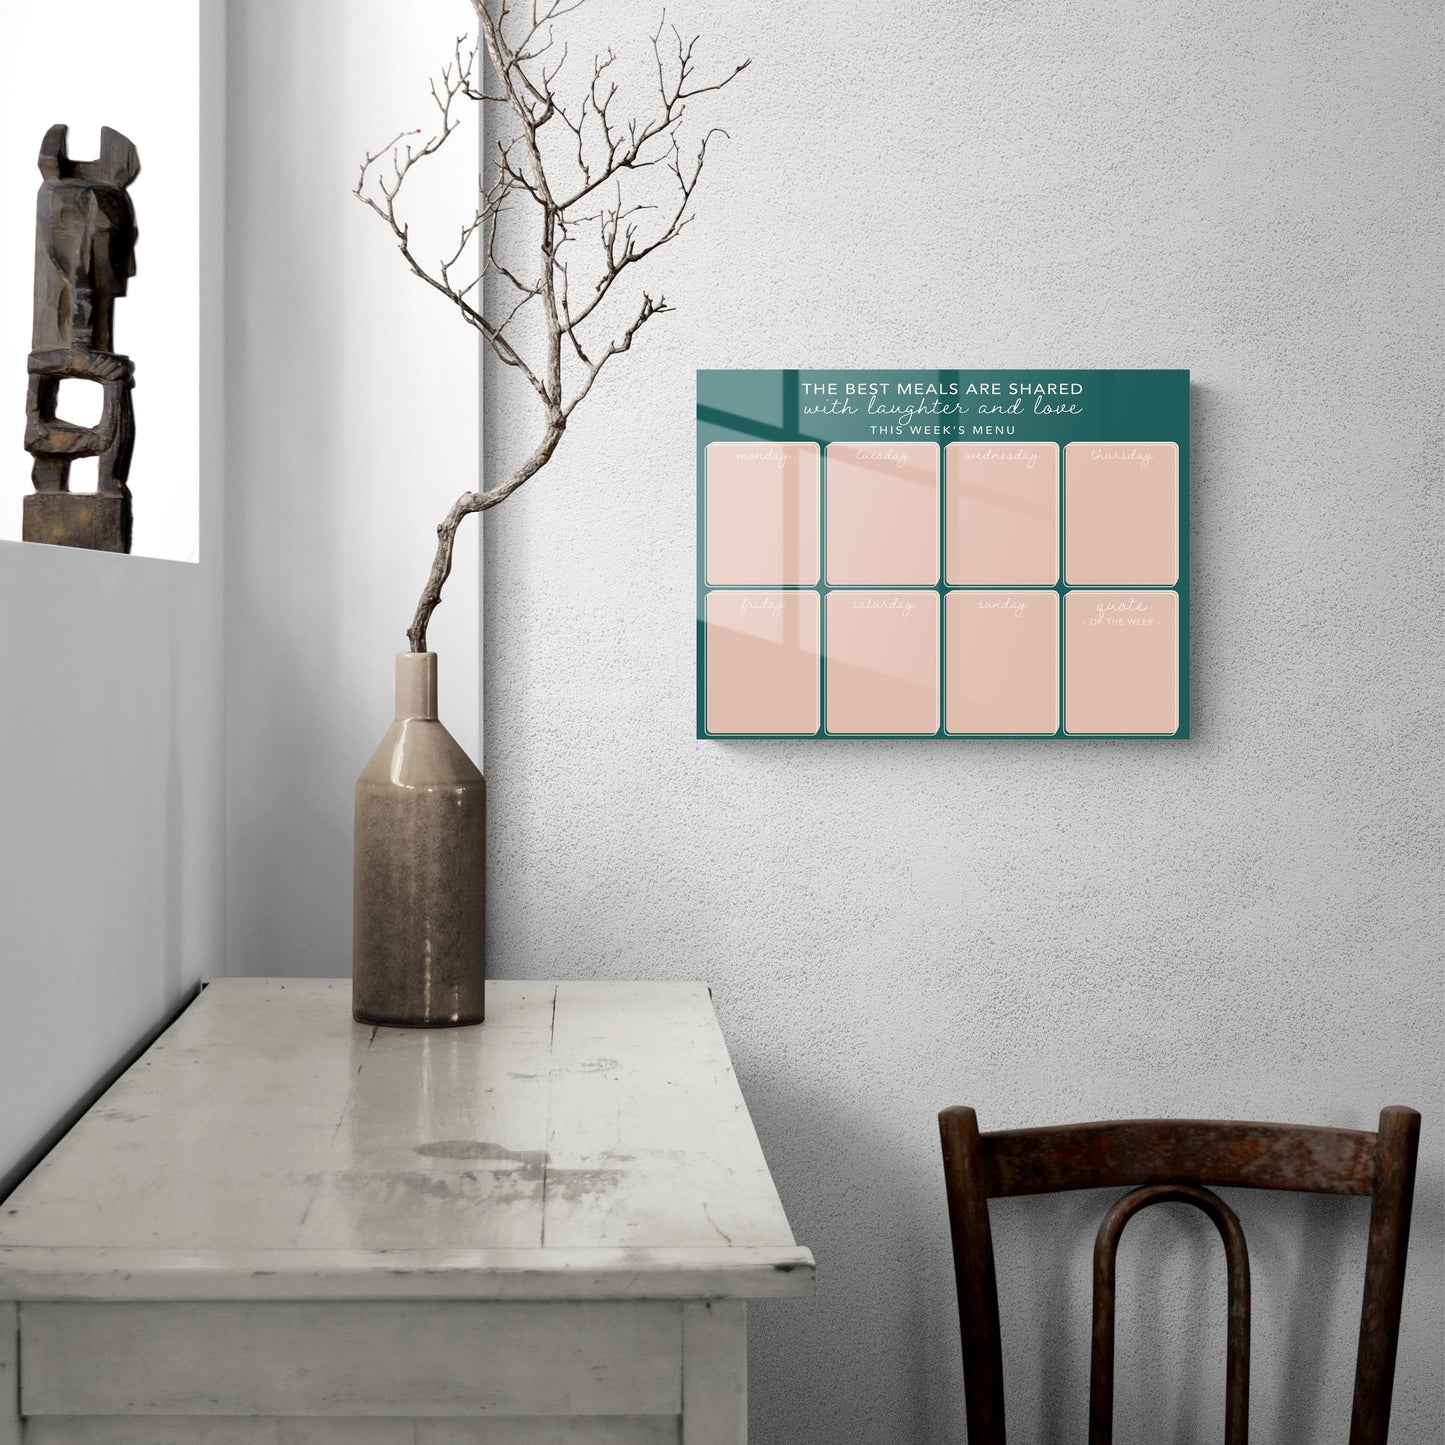 Minimalistic Green and Pink Menu Board | 16x12